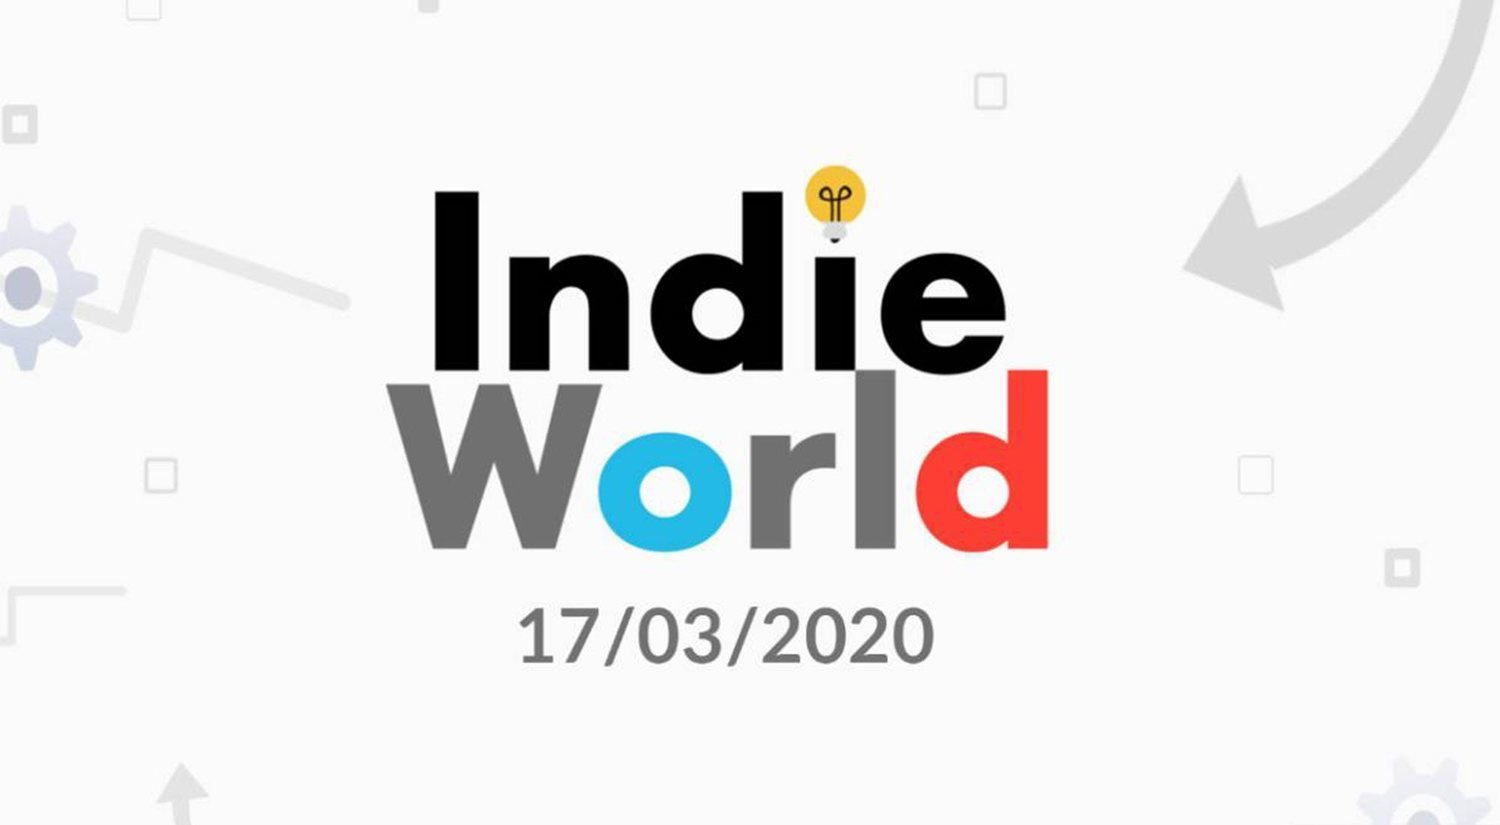 Nintendo Indie World 2020: todas las novedades presentadas por Nintendo